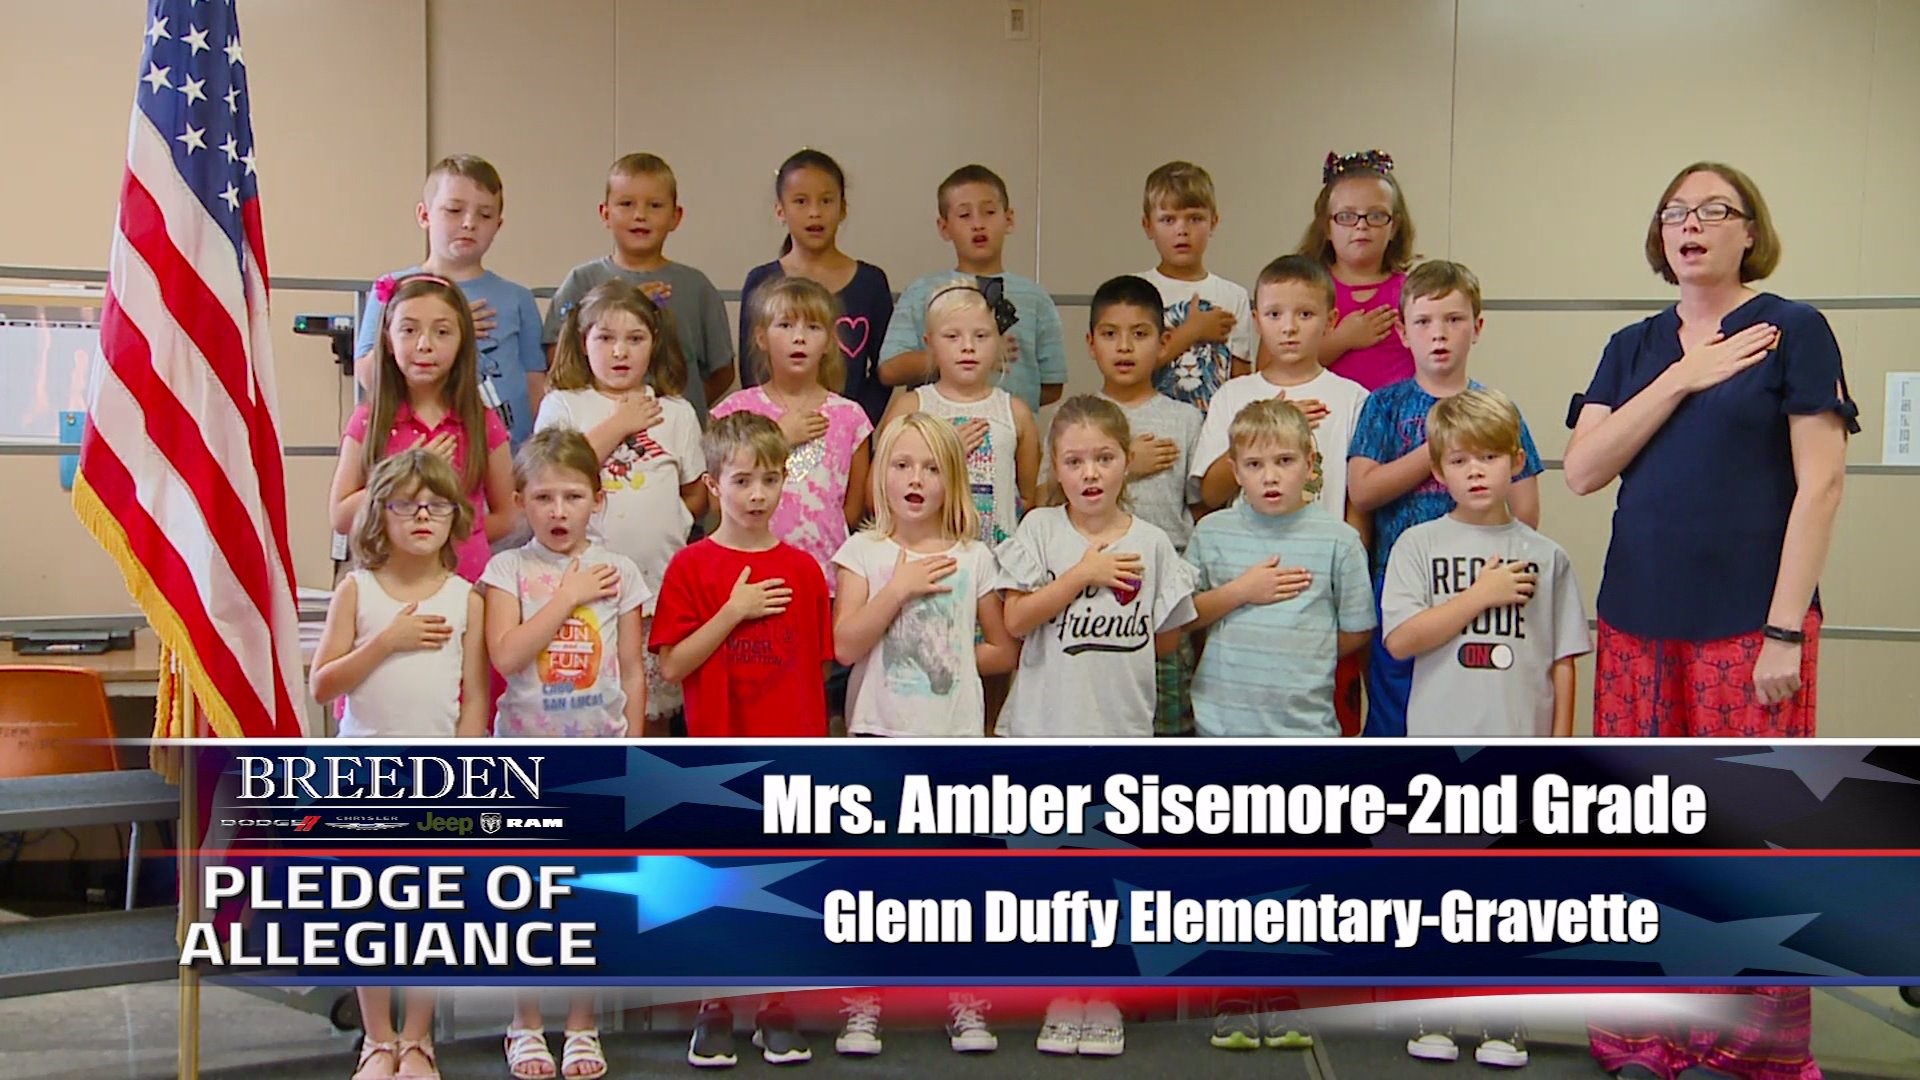 Mrs. Amber Sisemore  2nd Grade Glenn Duffy Elementary, Gravette